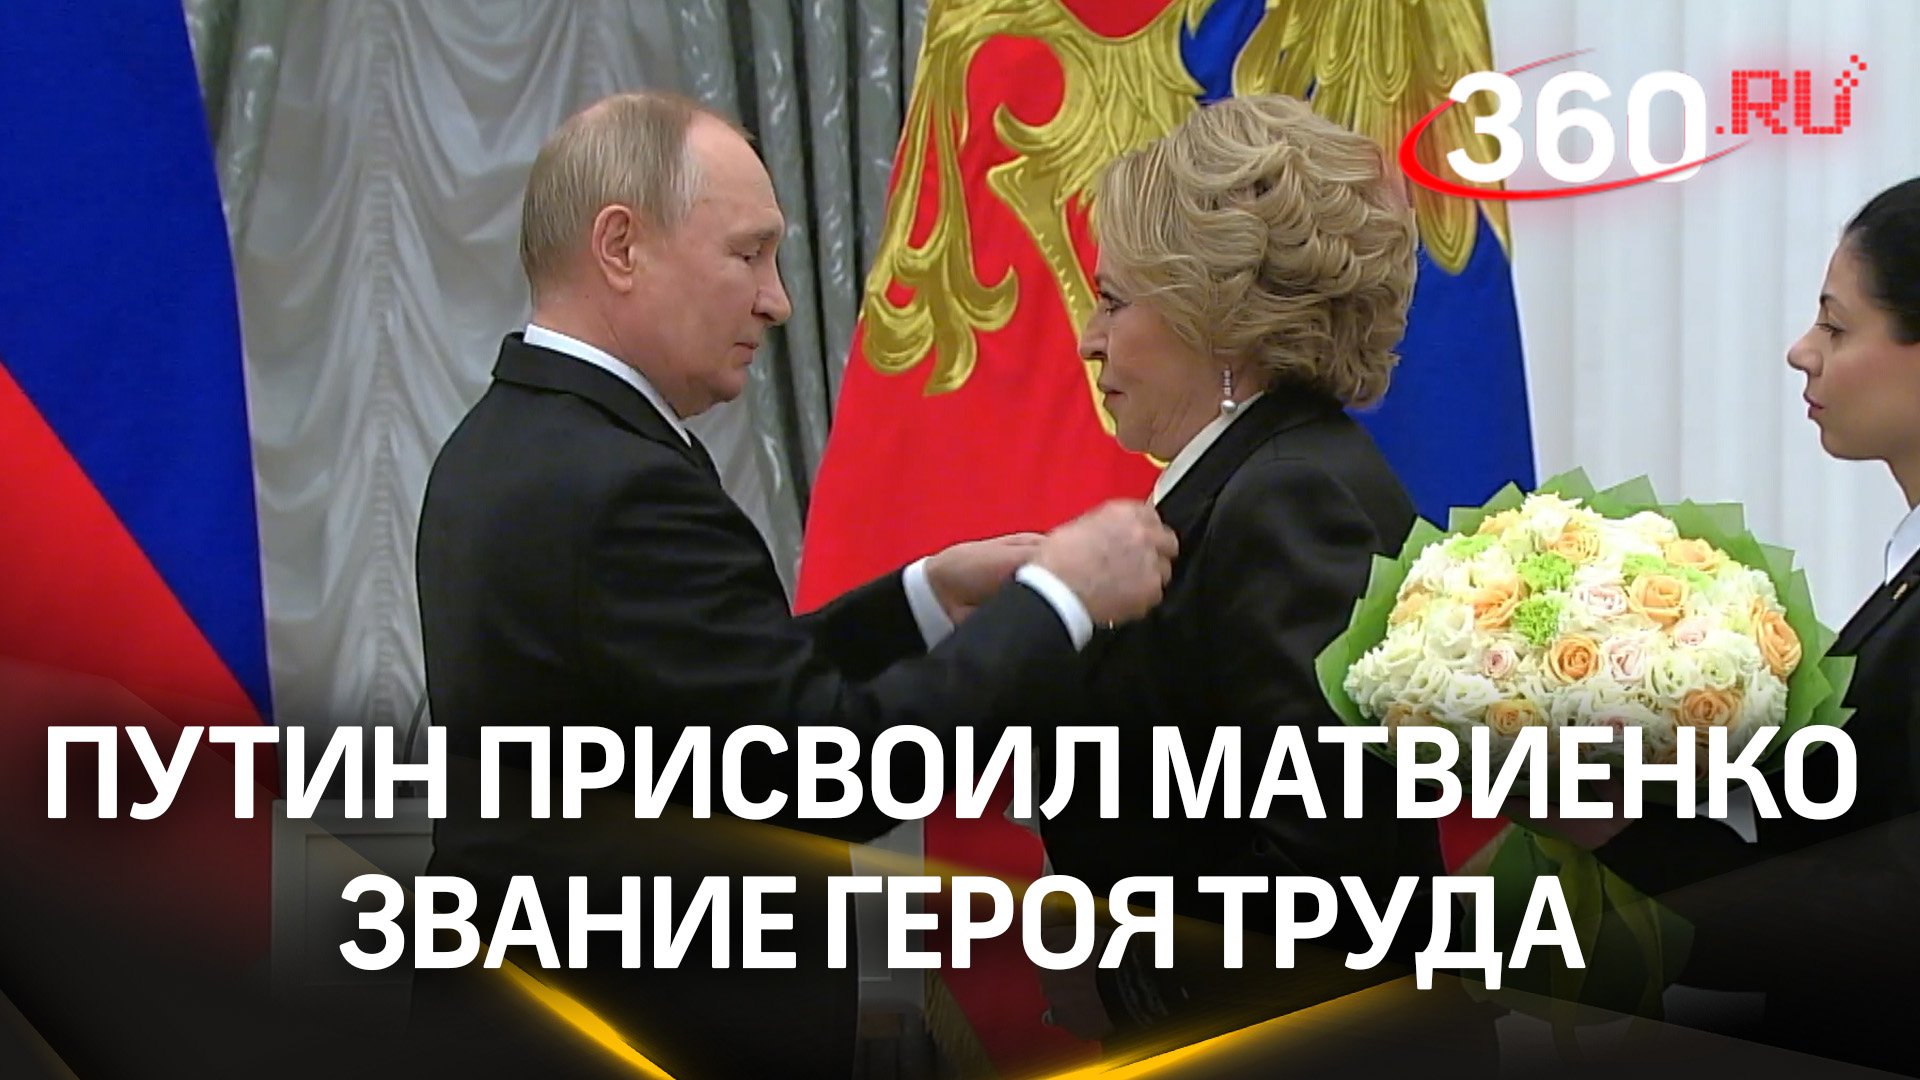 Новый Герой труда Валентина Матвиенко пообещала Путину работать как на передовой